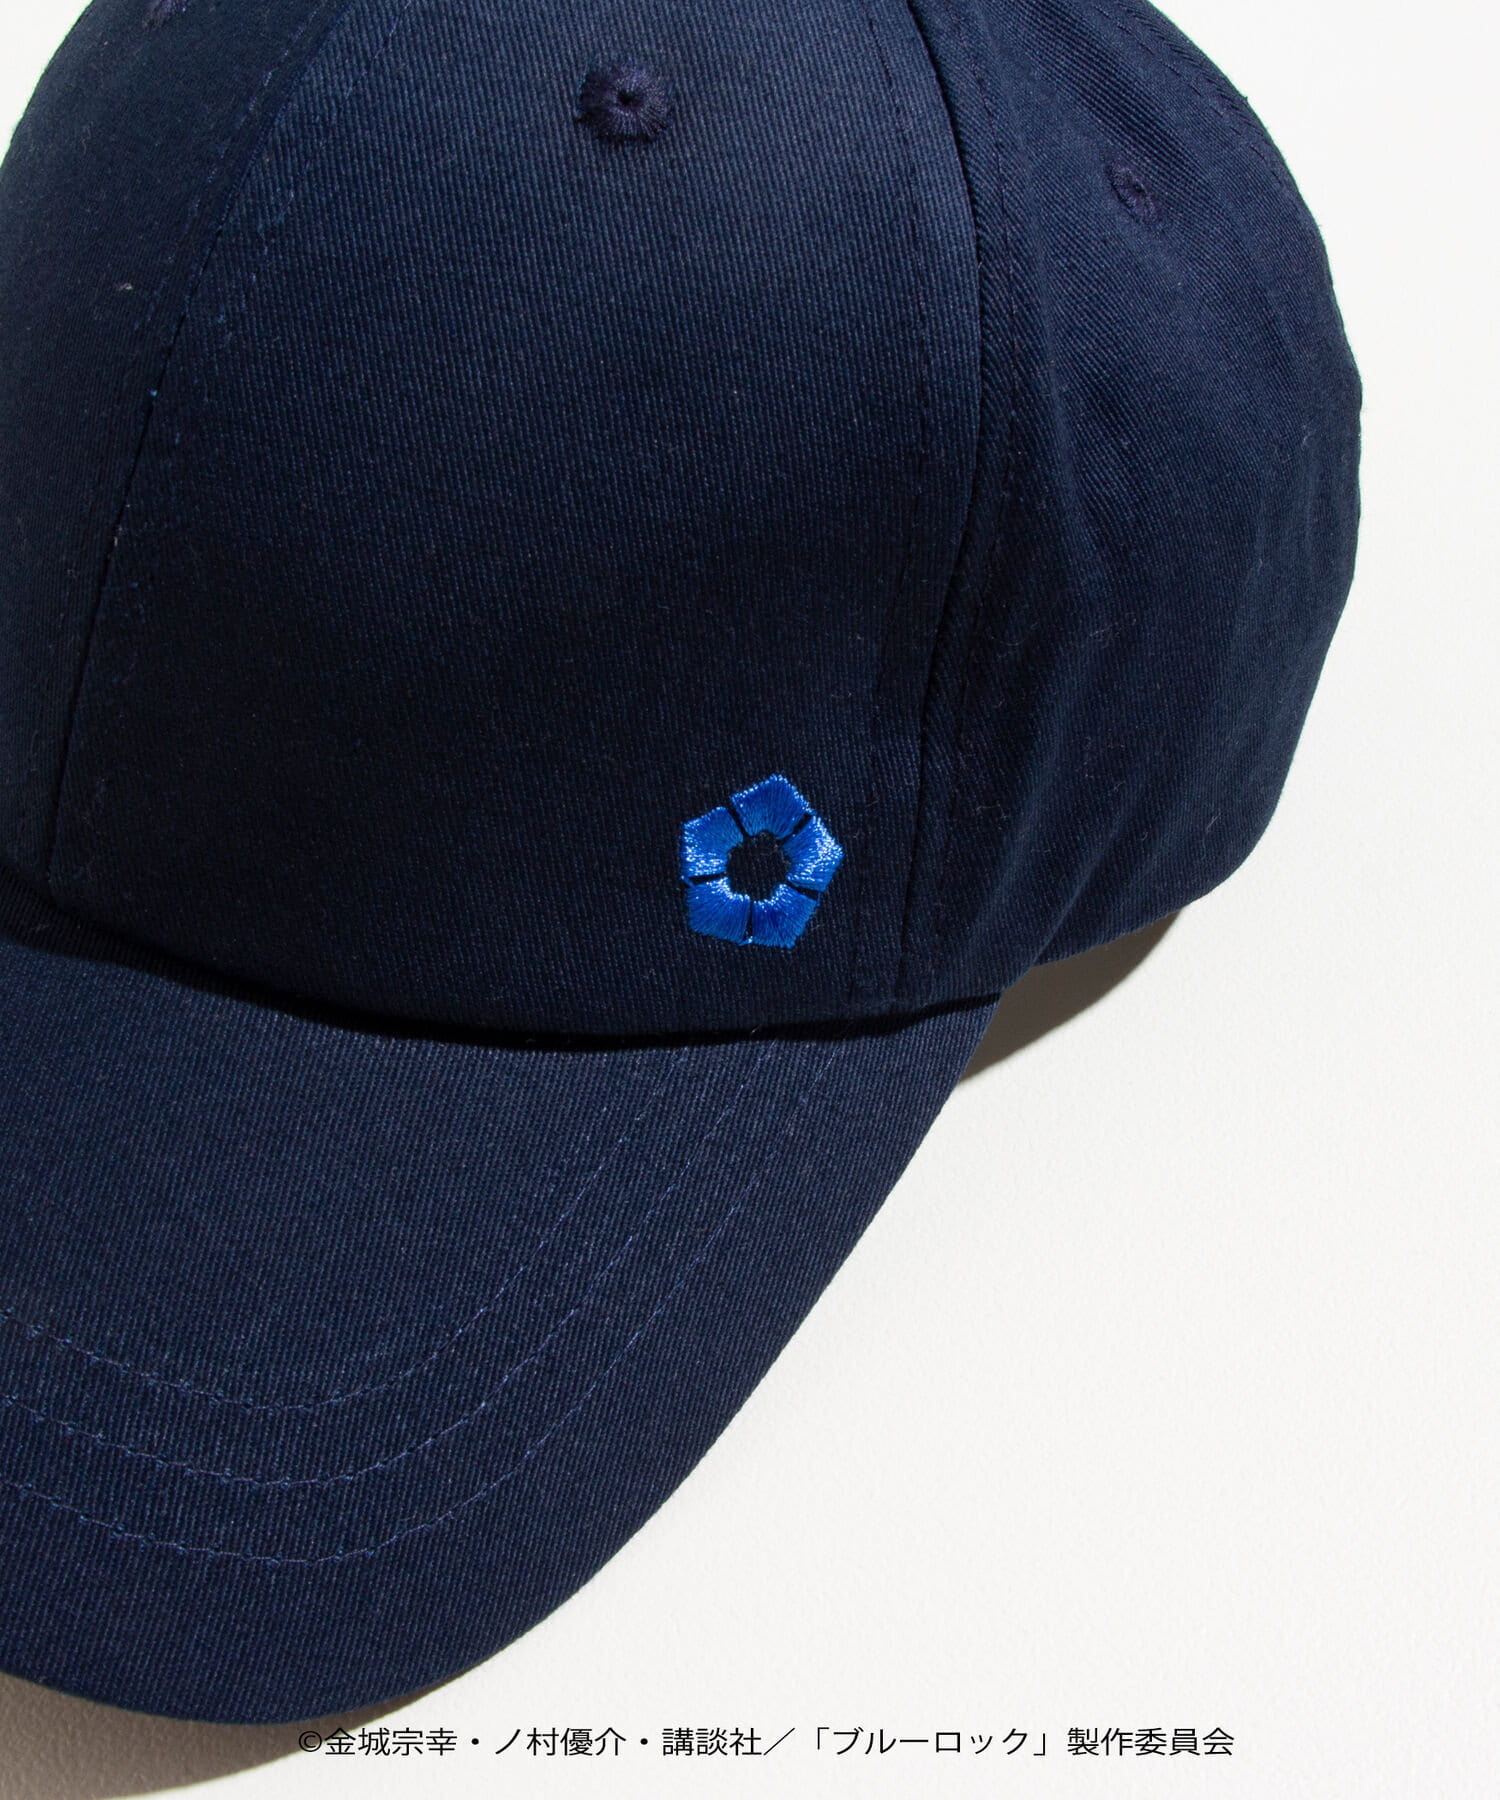 FREDY &GLOSTER(フレディ アンド グロスター) 帽子 【BLUELOCK/ブルーロック】ロゴ刺繍キャップ ネイビー